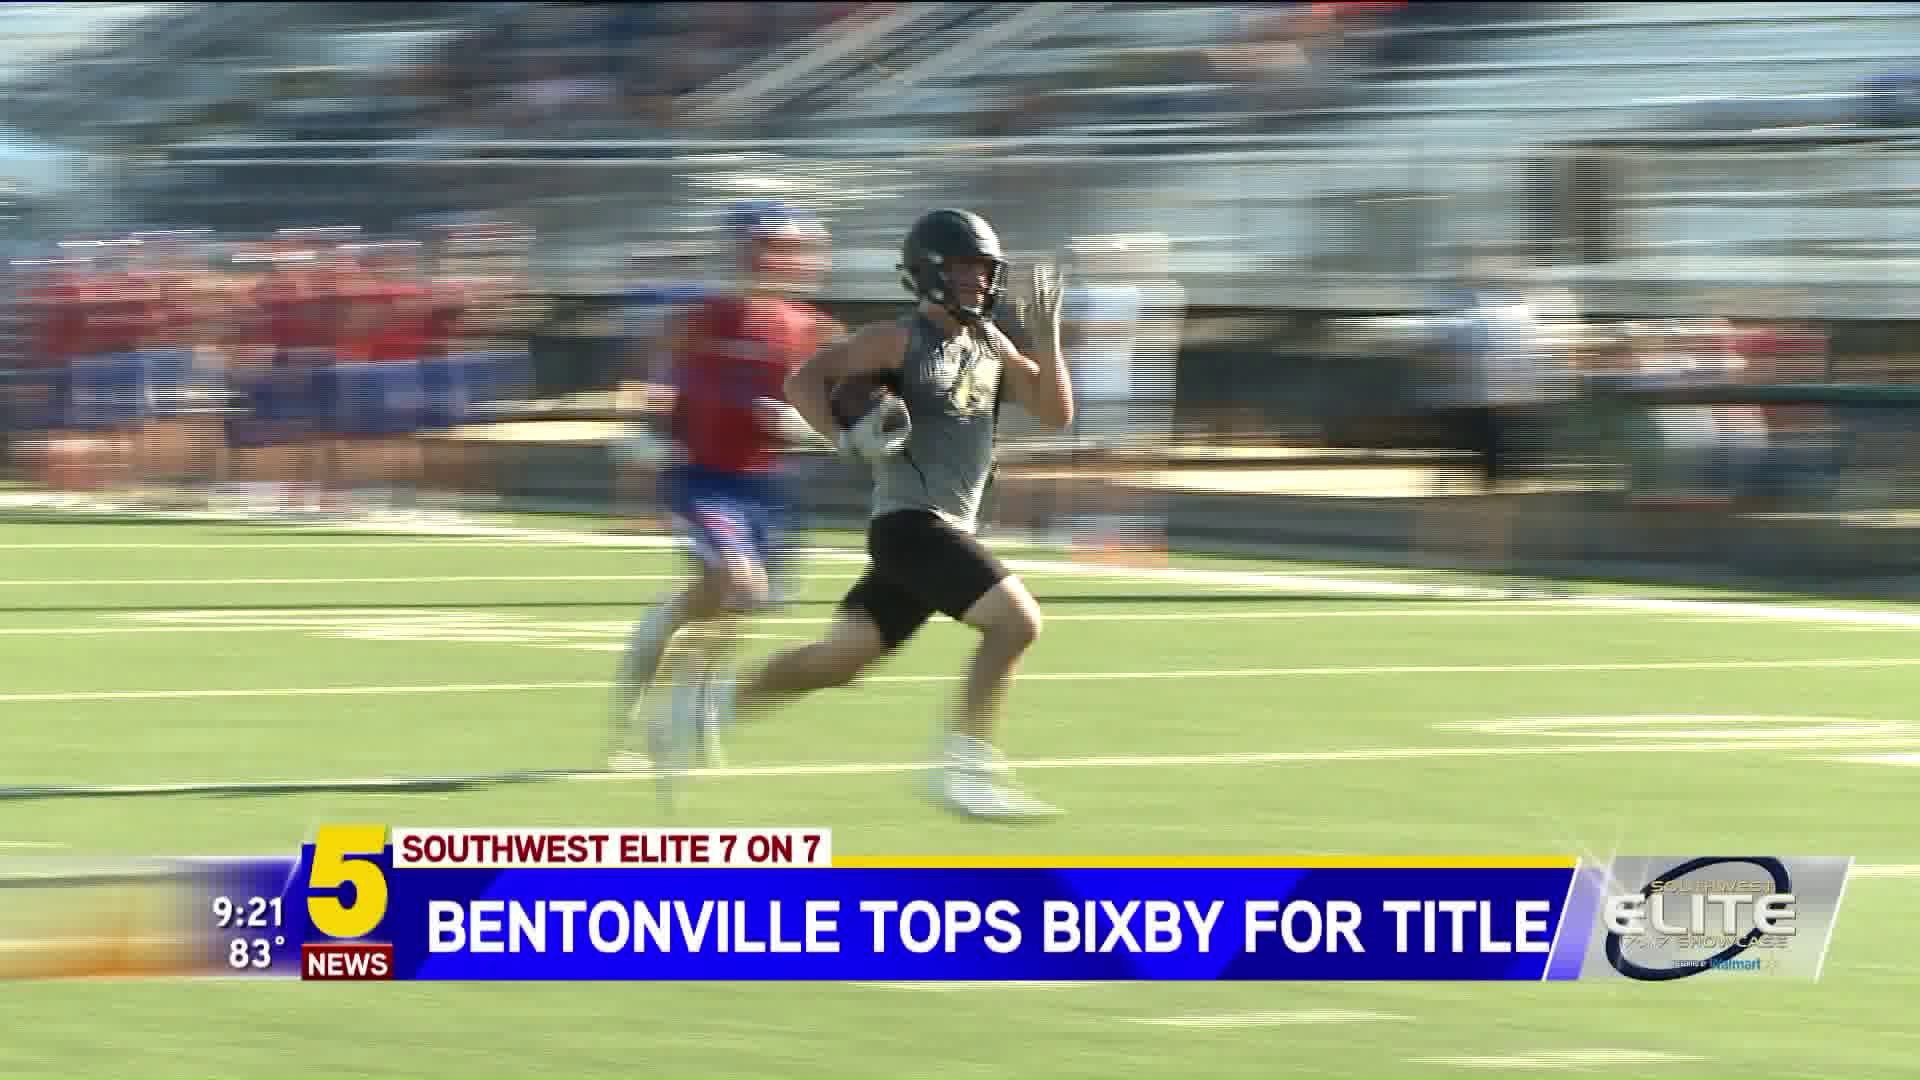 Bentonville Takes SW Elite Title